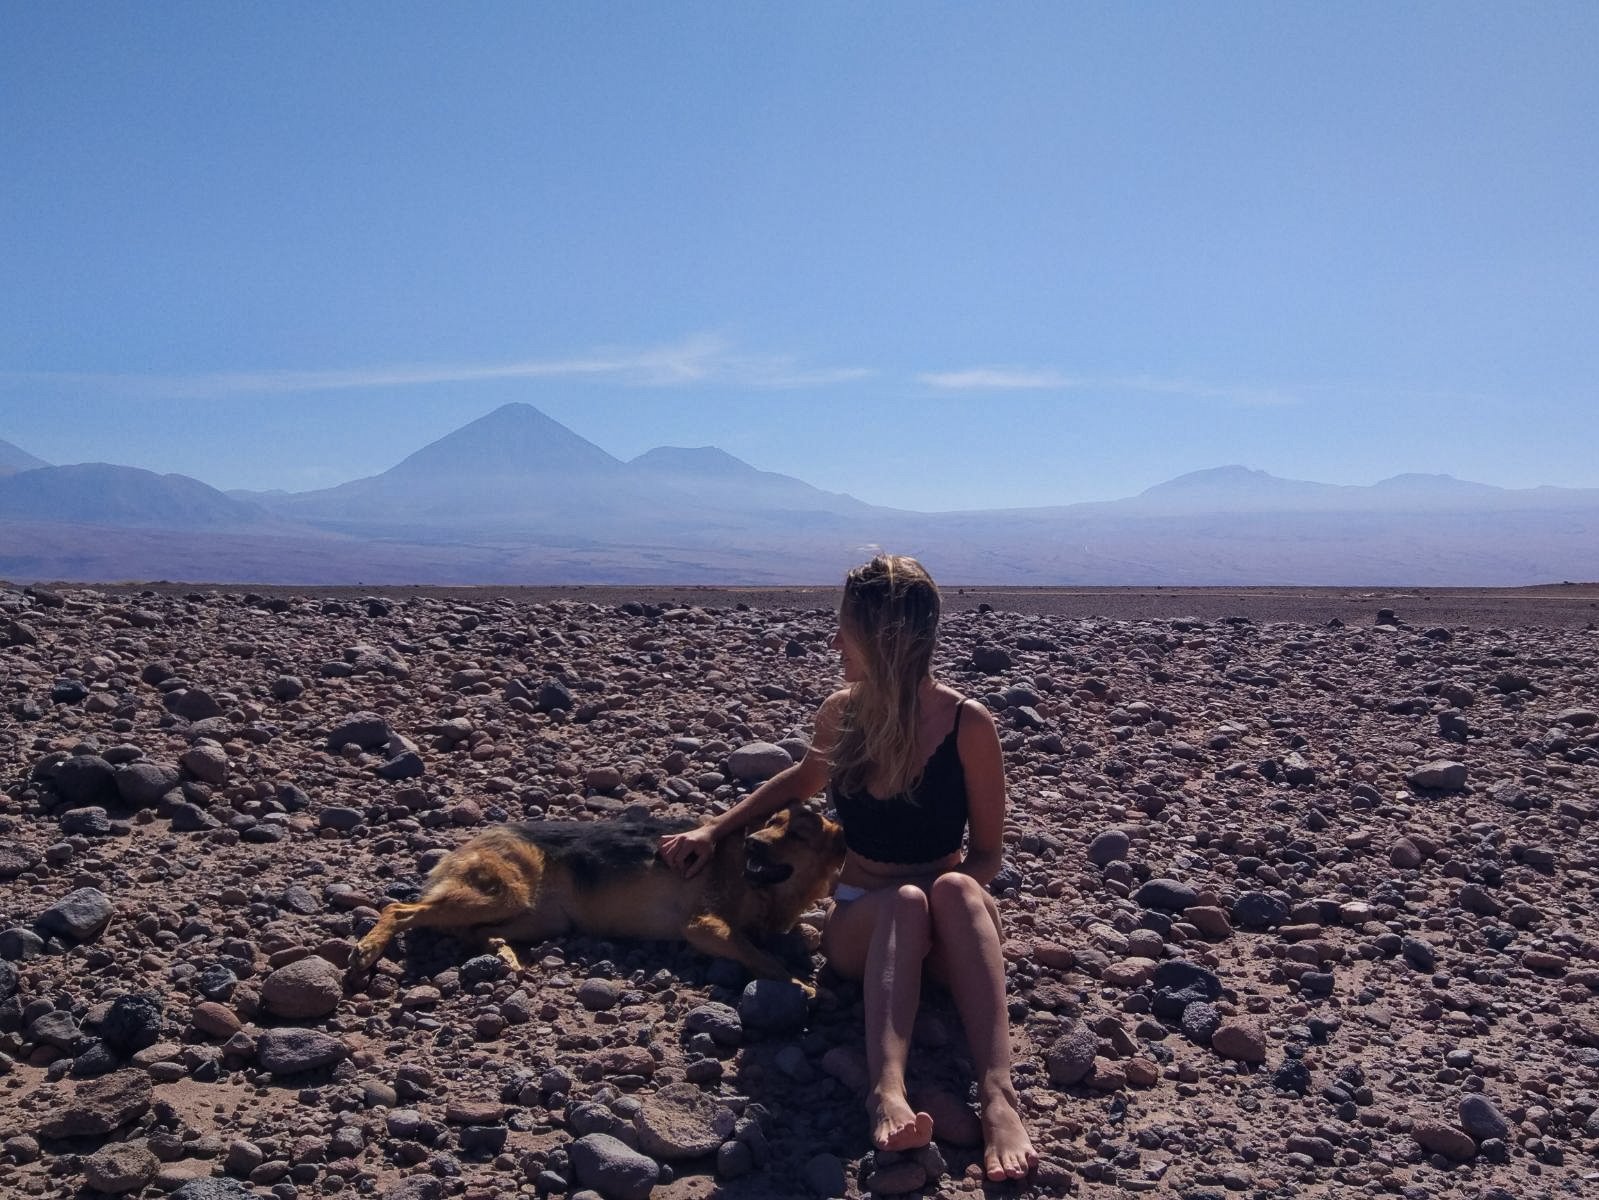 Mulher no deserto do Atacama com um cachorro ao lado. De fundo, dá para ver 2 vulcões.